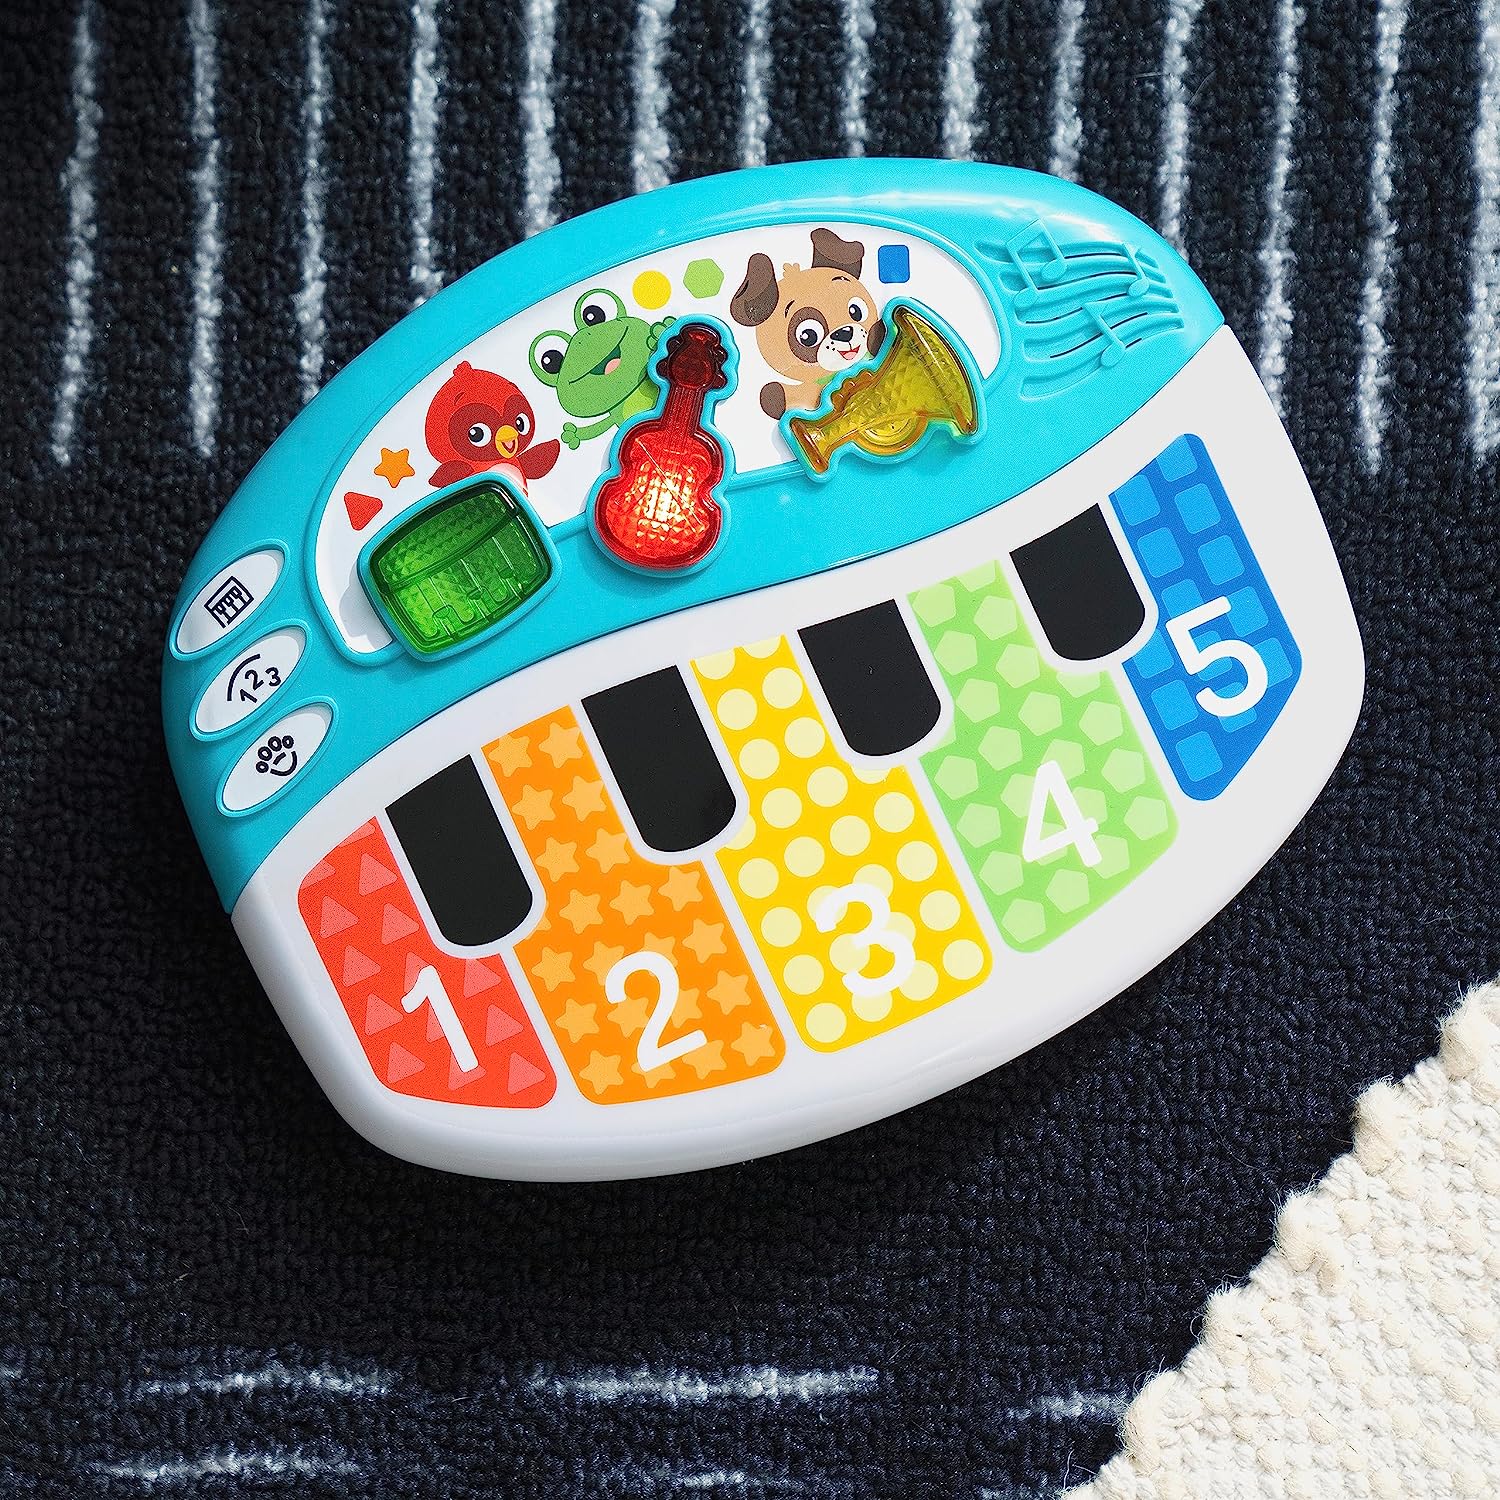 Baby Einstein Piano Musical Toy